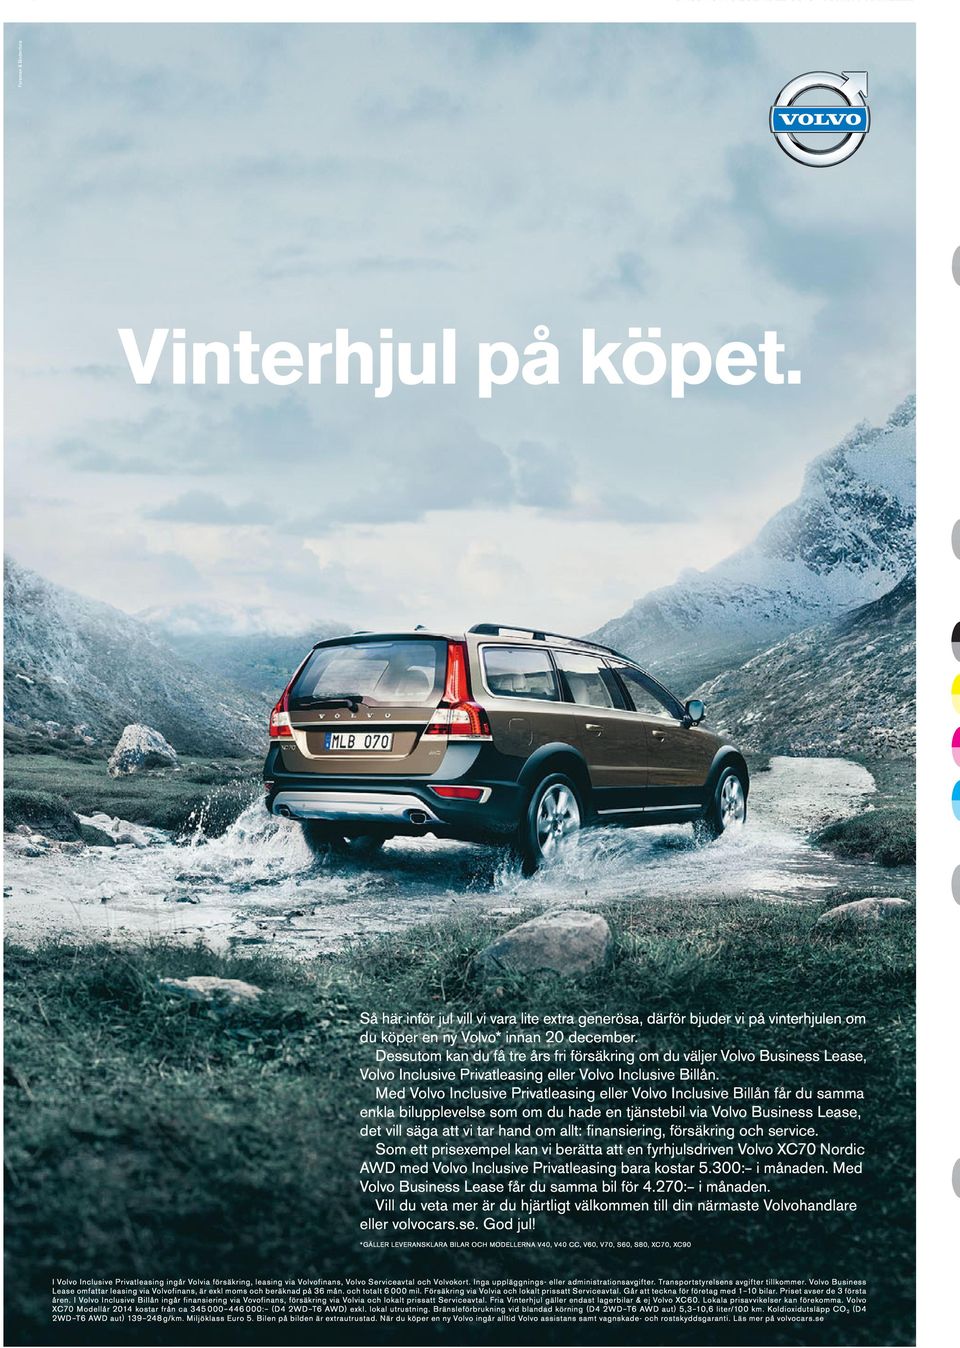 Med Volvo nclusive Privatleasing eller Volvo nclusive Billån får du samma enkla bilupplevelse som om du hade en tjänstebil via Volvo Business ease, det vill säga att vi tar hand om allt: fi